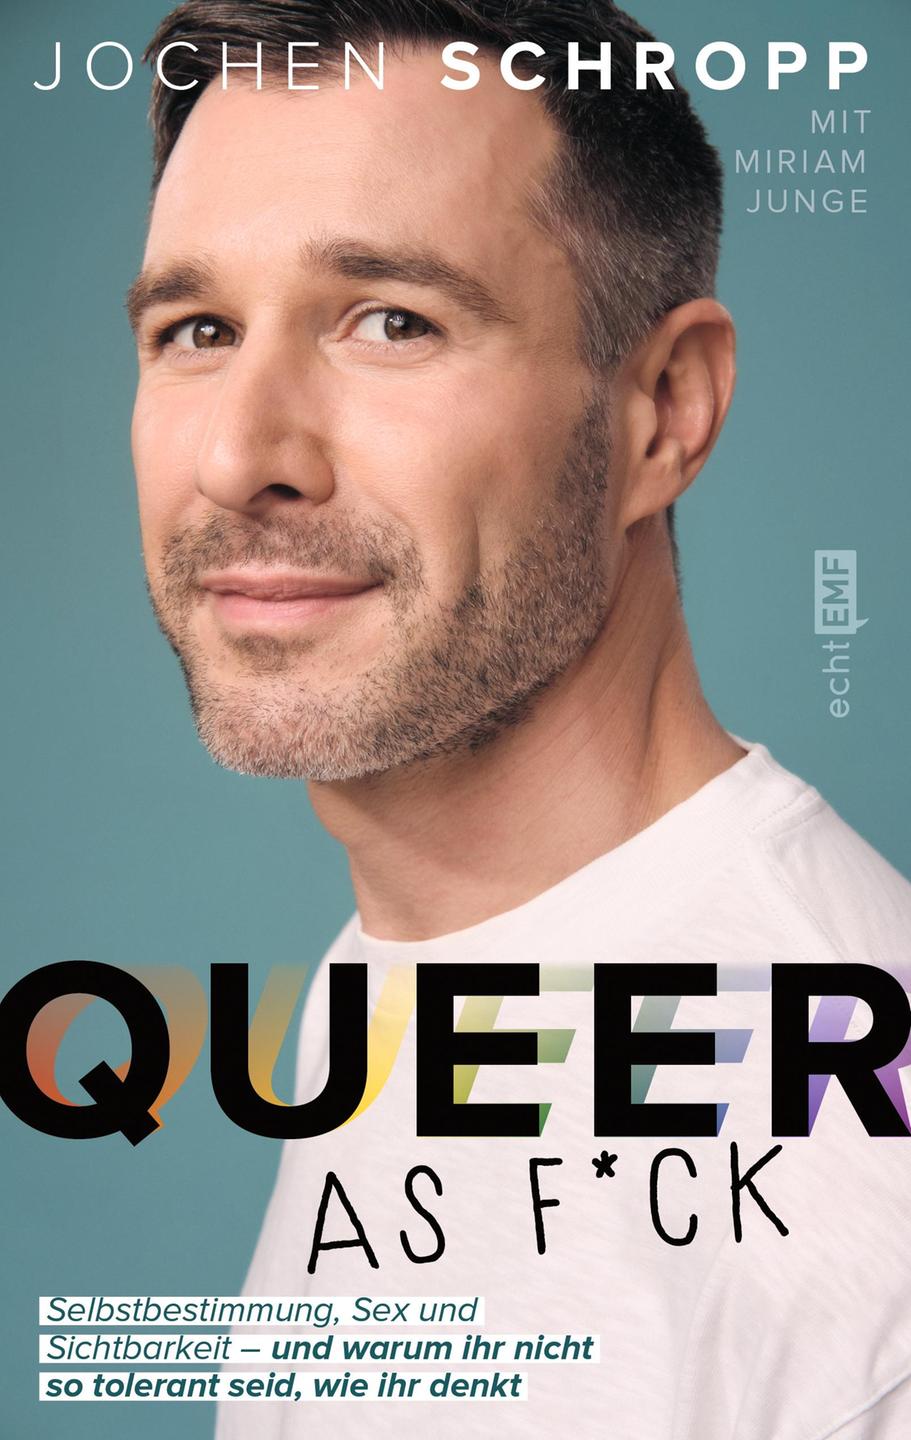 Buchcover zu "Queer as F*ck" von Jochen Schropp 